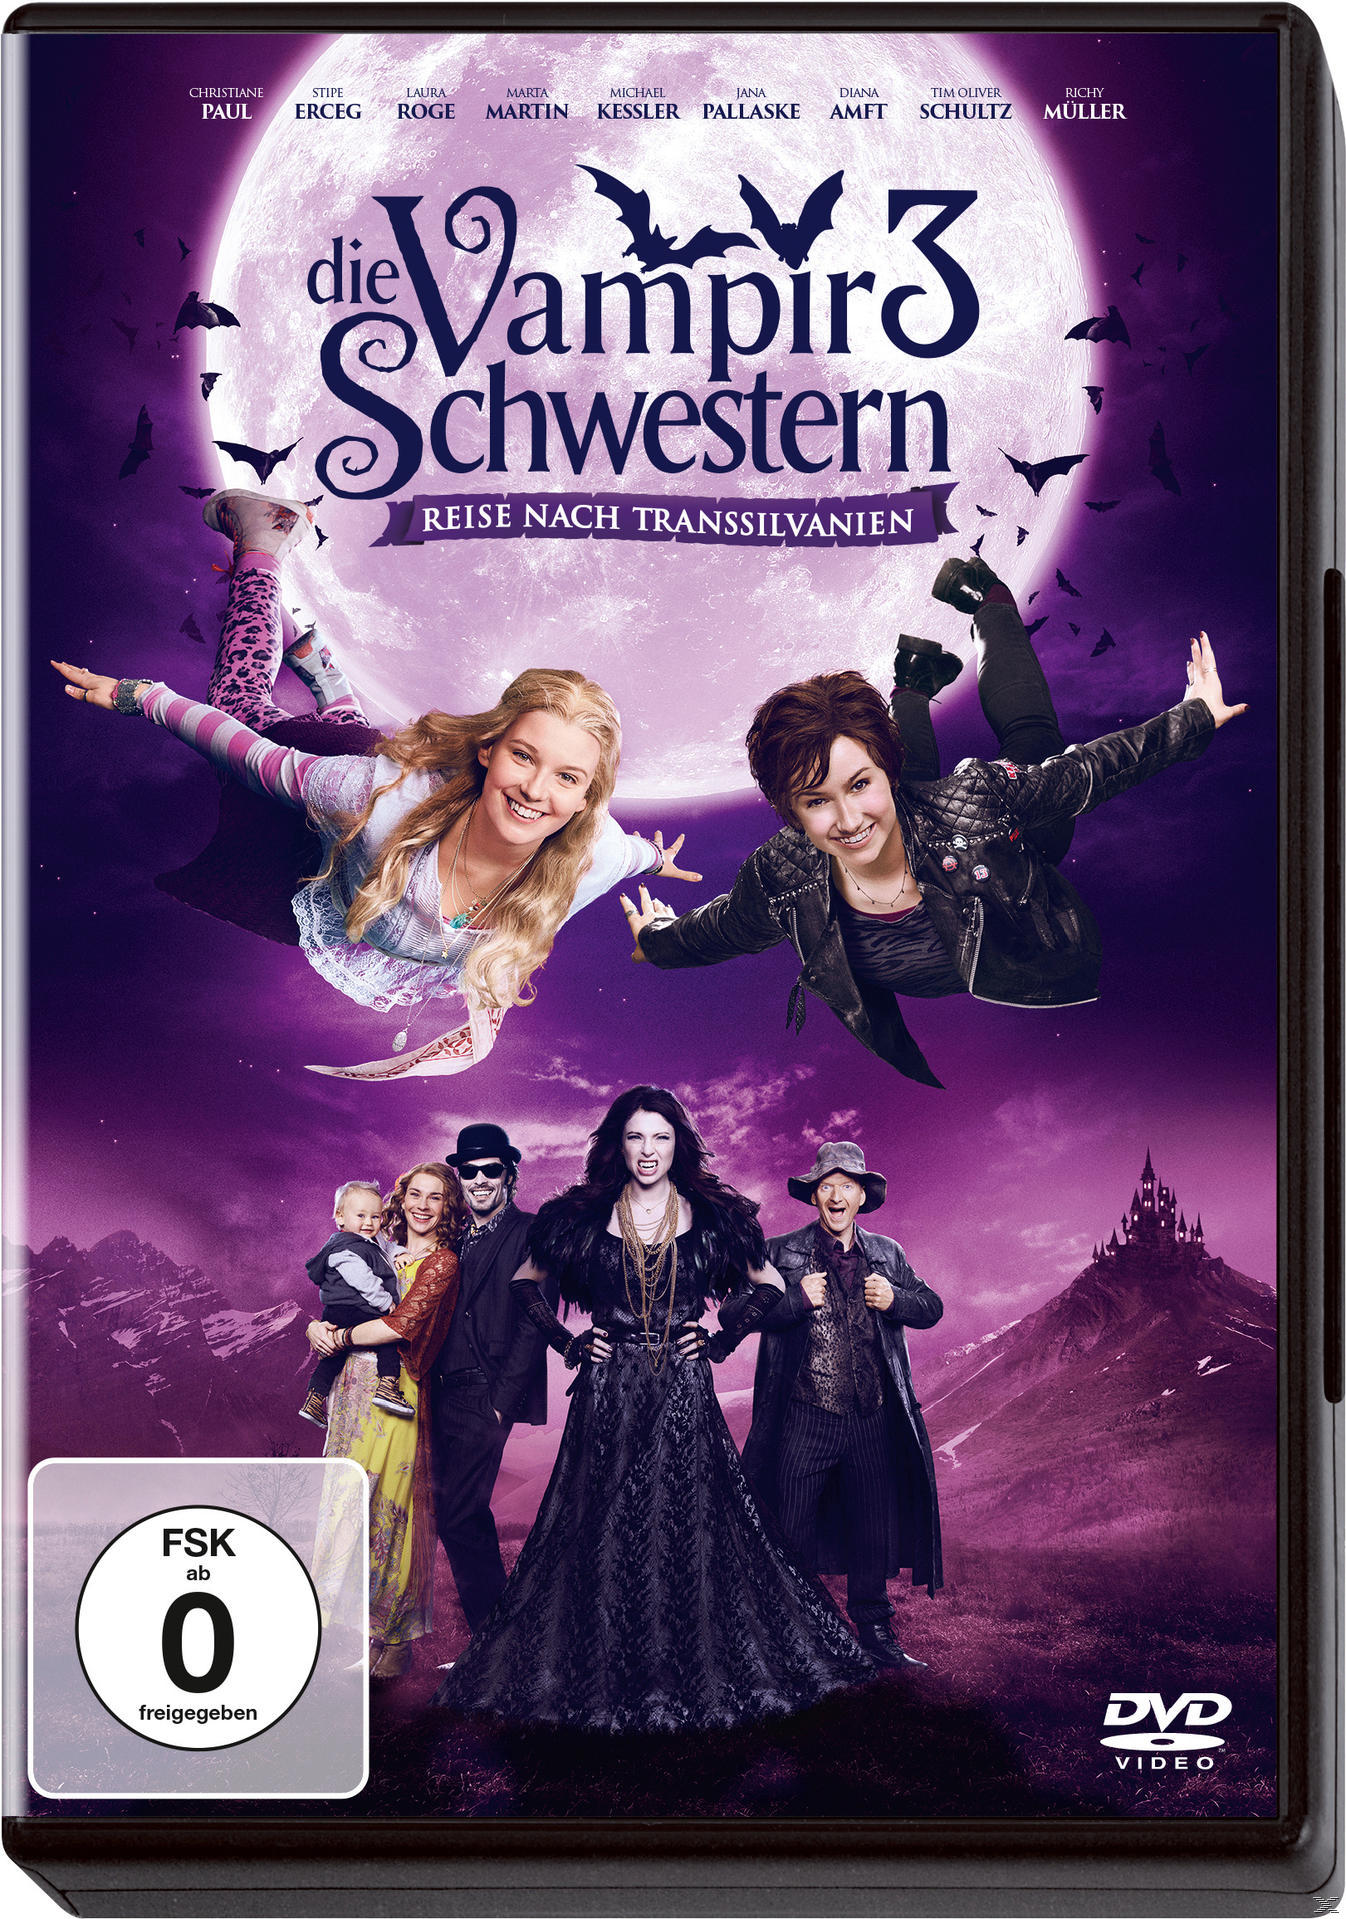 Transsilvanien nach Reise Vampirschwestern - Die DVD 3